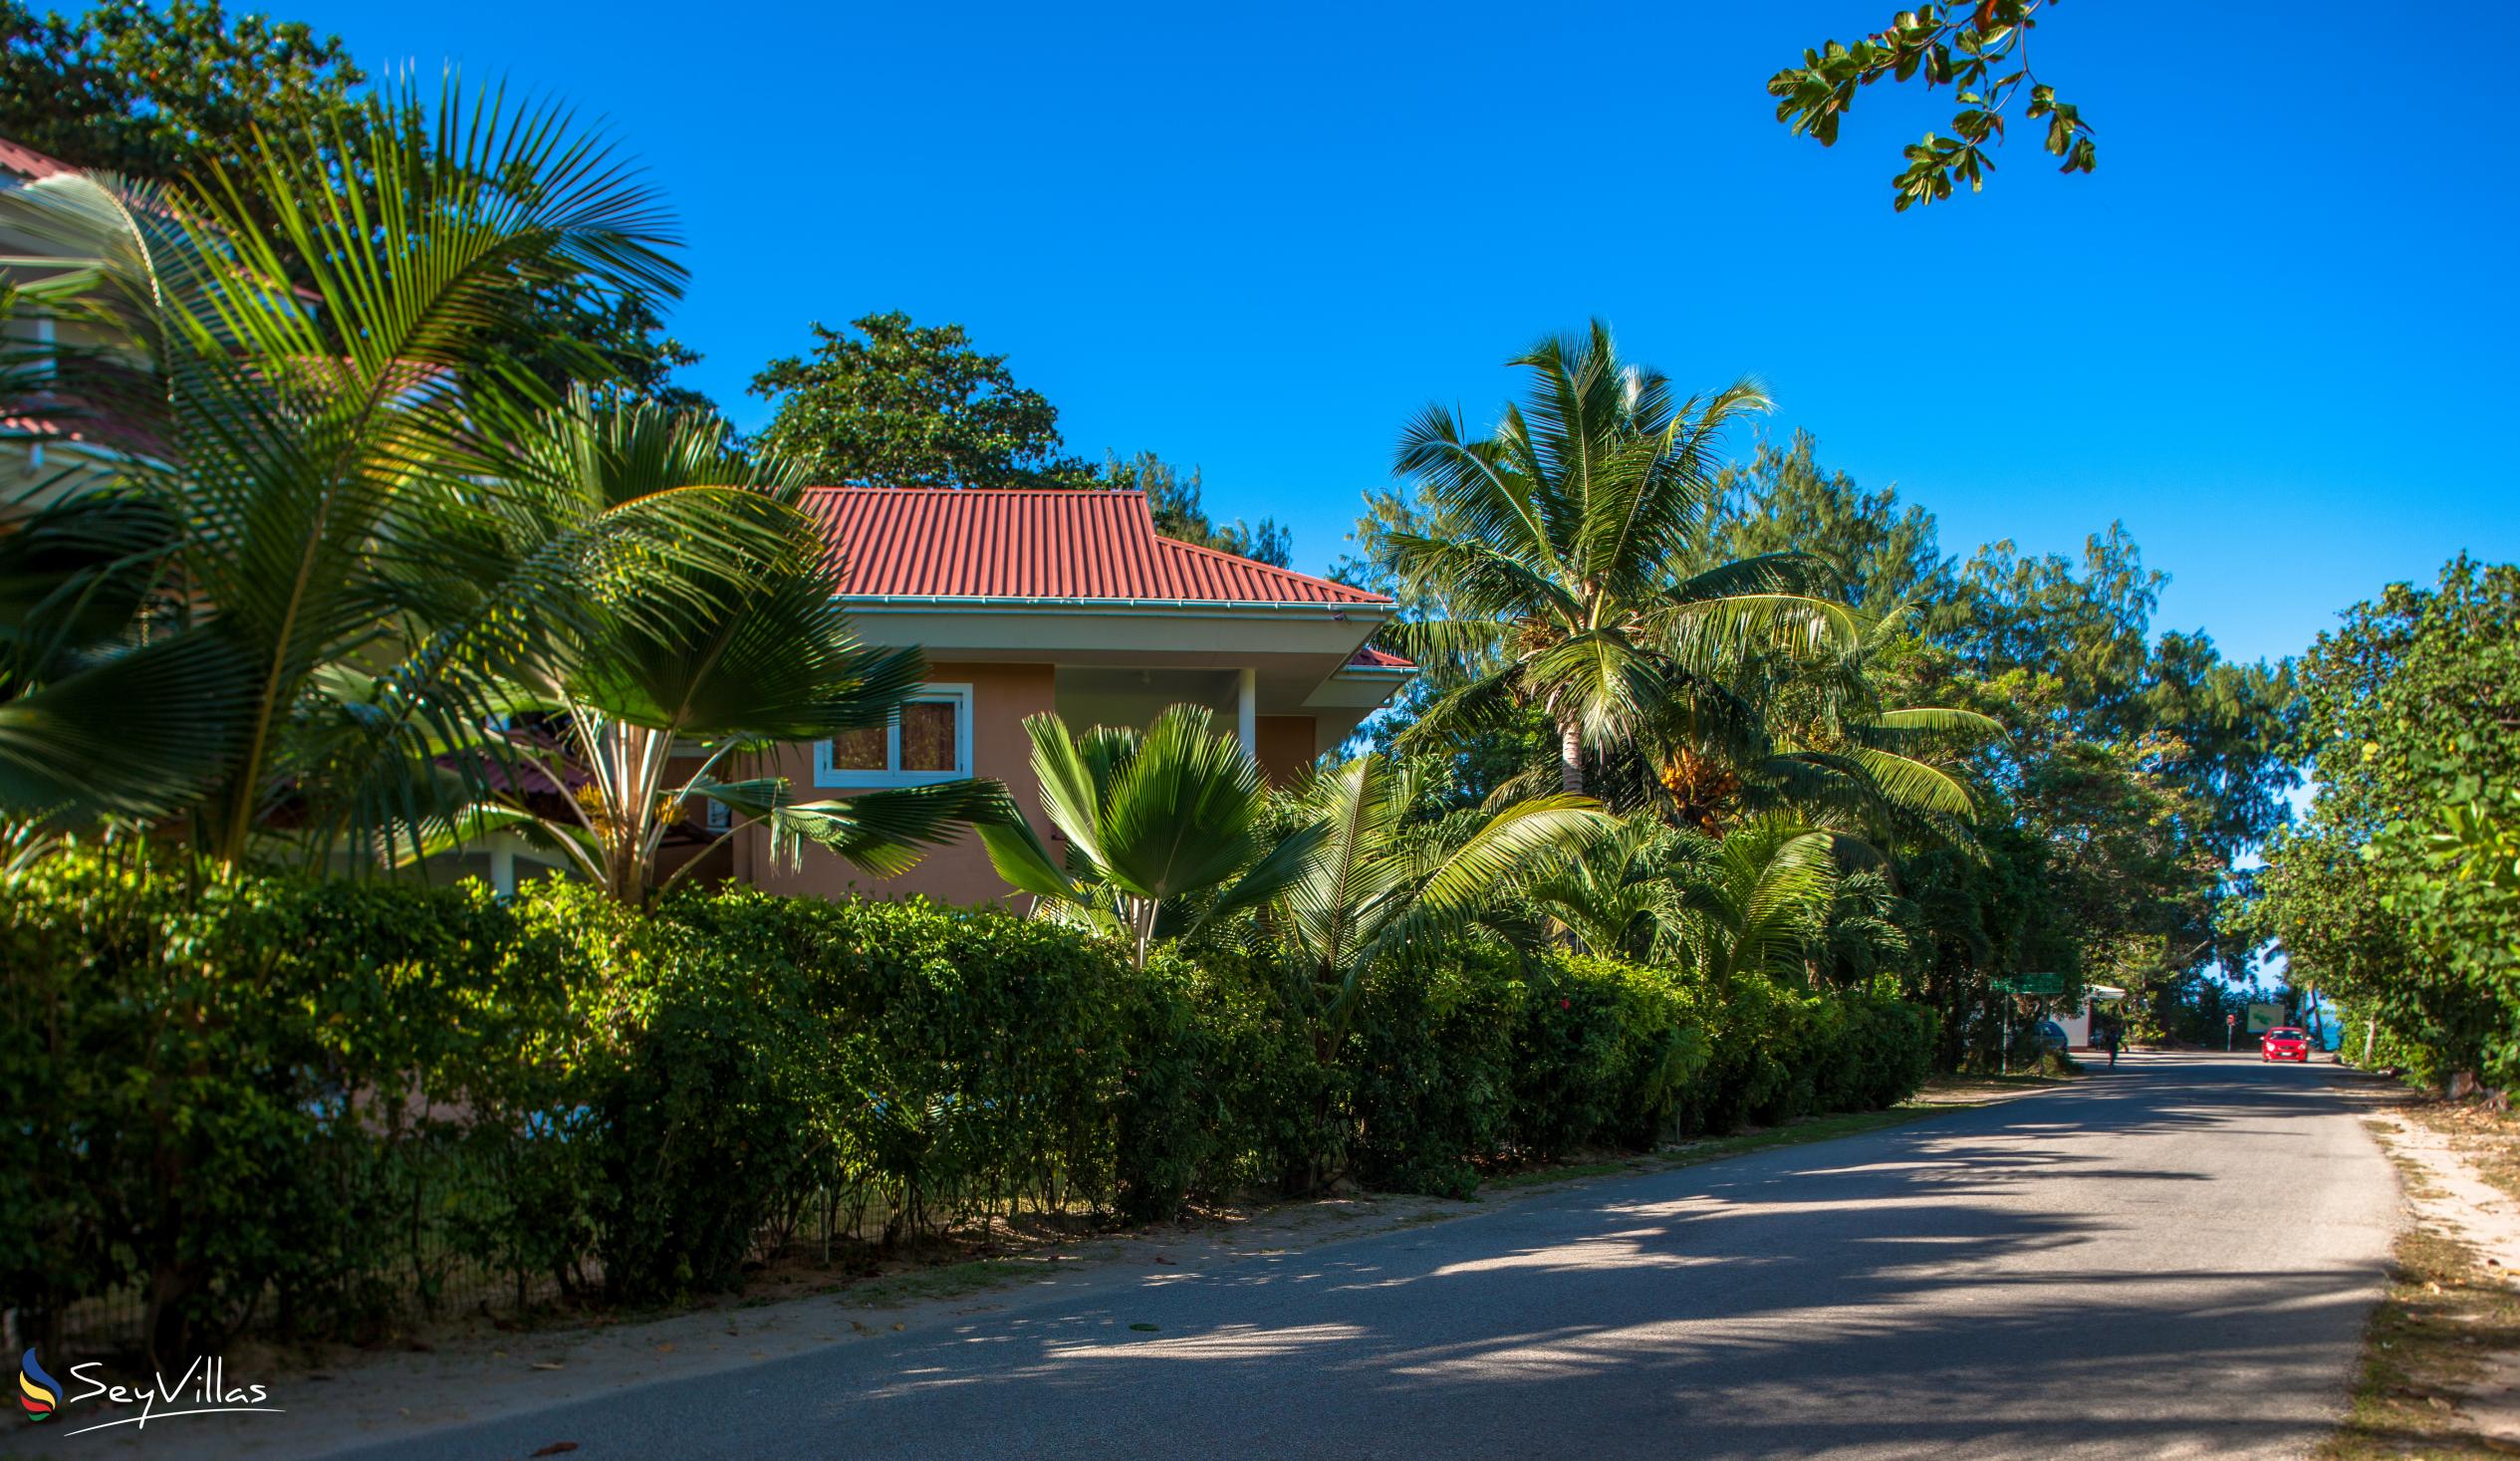 Foto 12: Cote d'Or Apartments - Aussenbereich - Praslin (Seychellen)